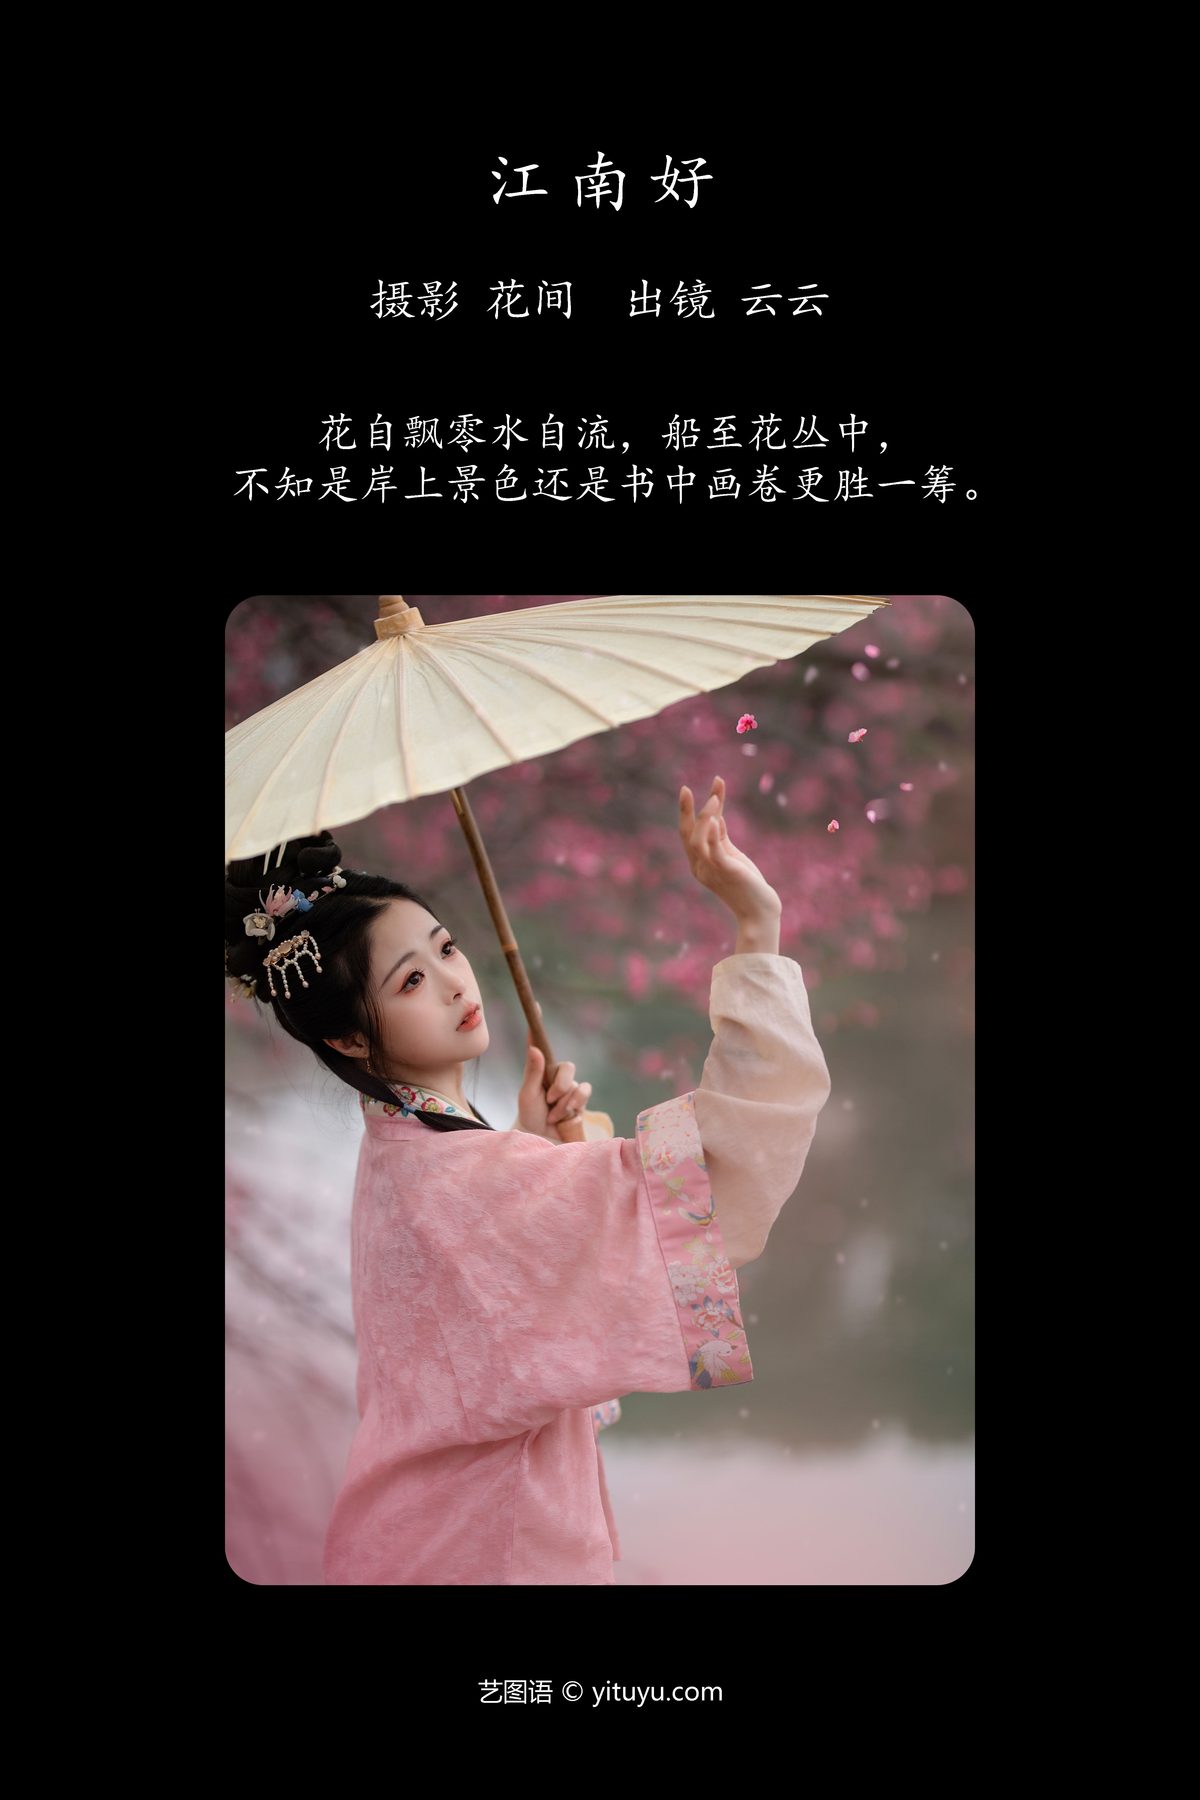 YiTuYu艺图语 Vol 5065 Yun Yun De Hei Yan Quan Er 0002 7369845616.jpg